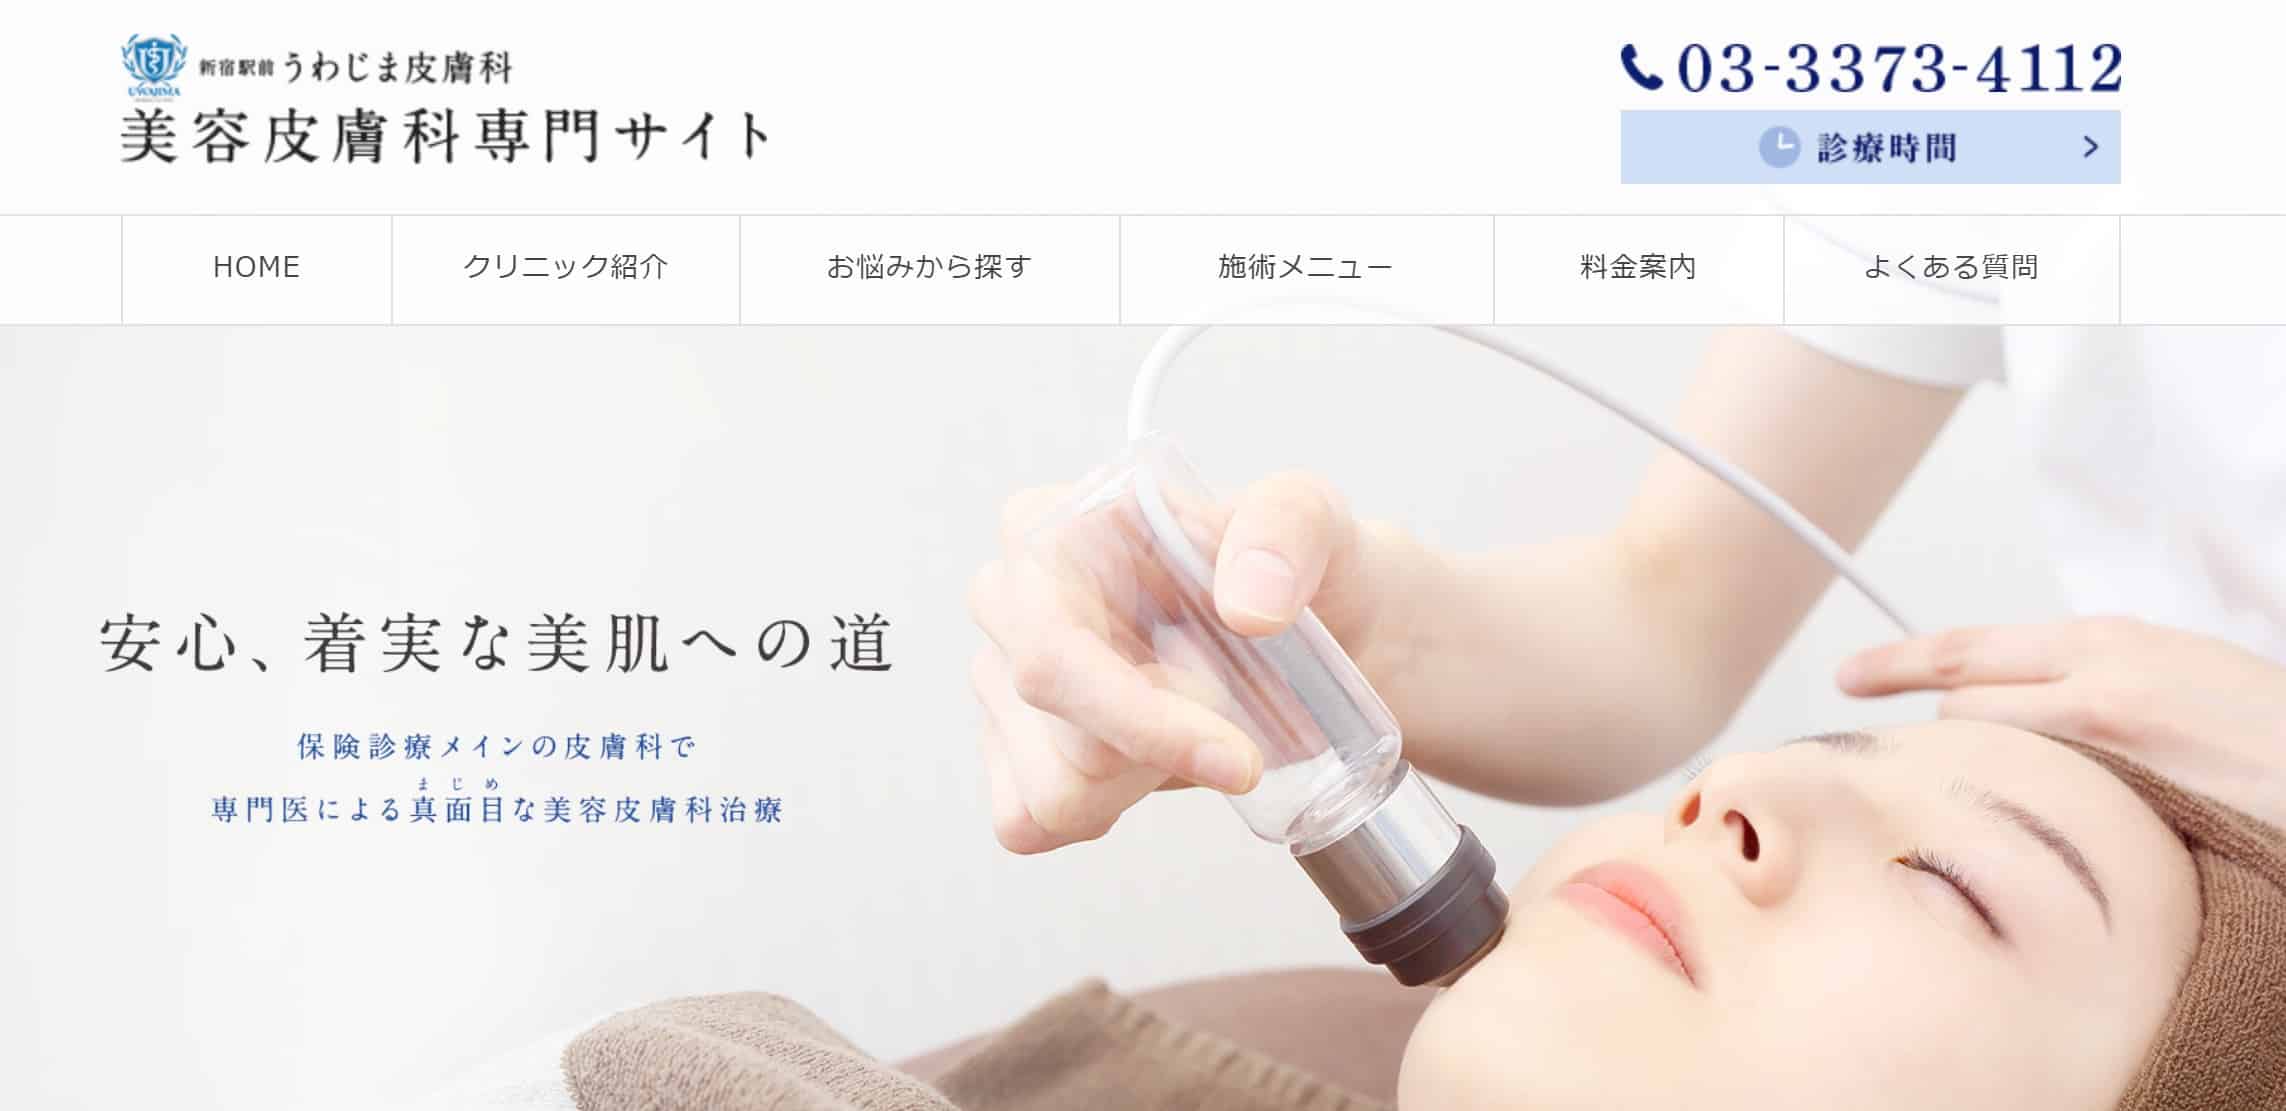 新宿でエラボトックスがうまいおすすめのうわじま皮膚科